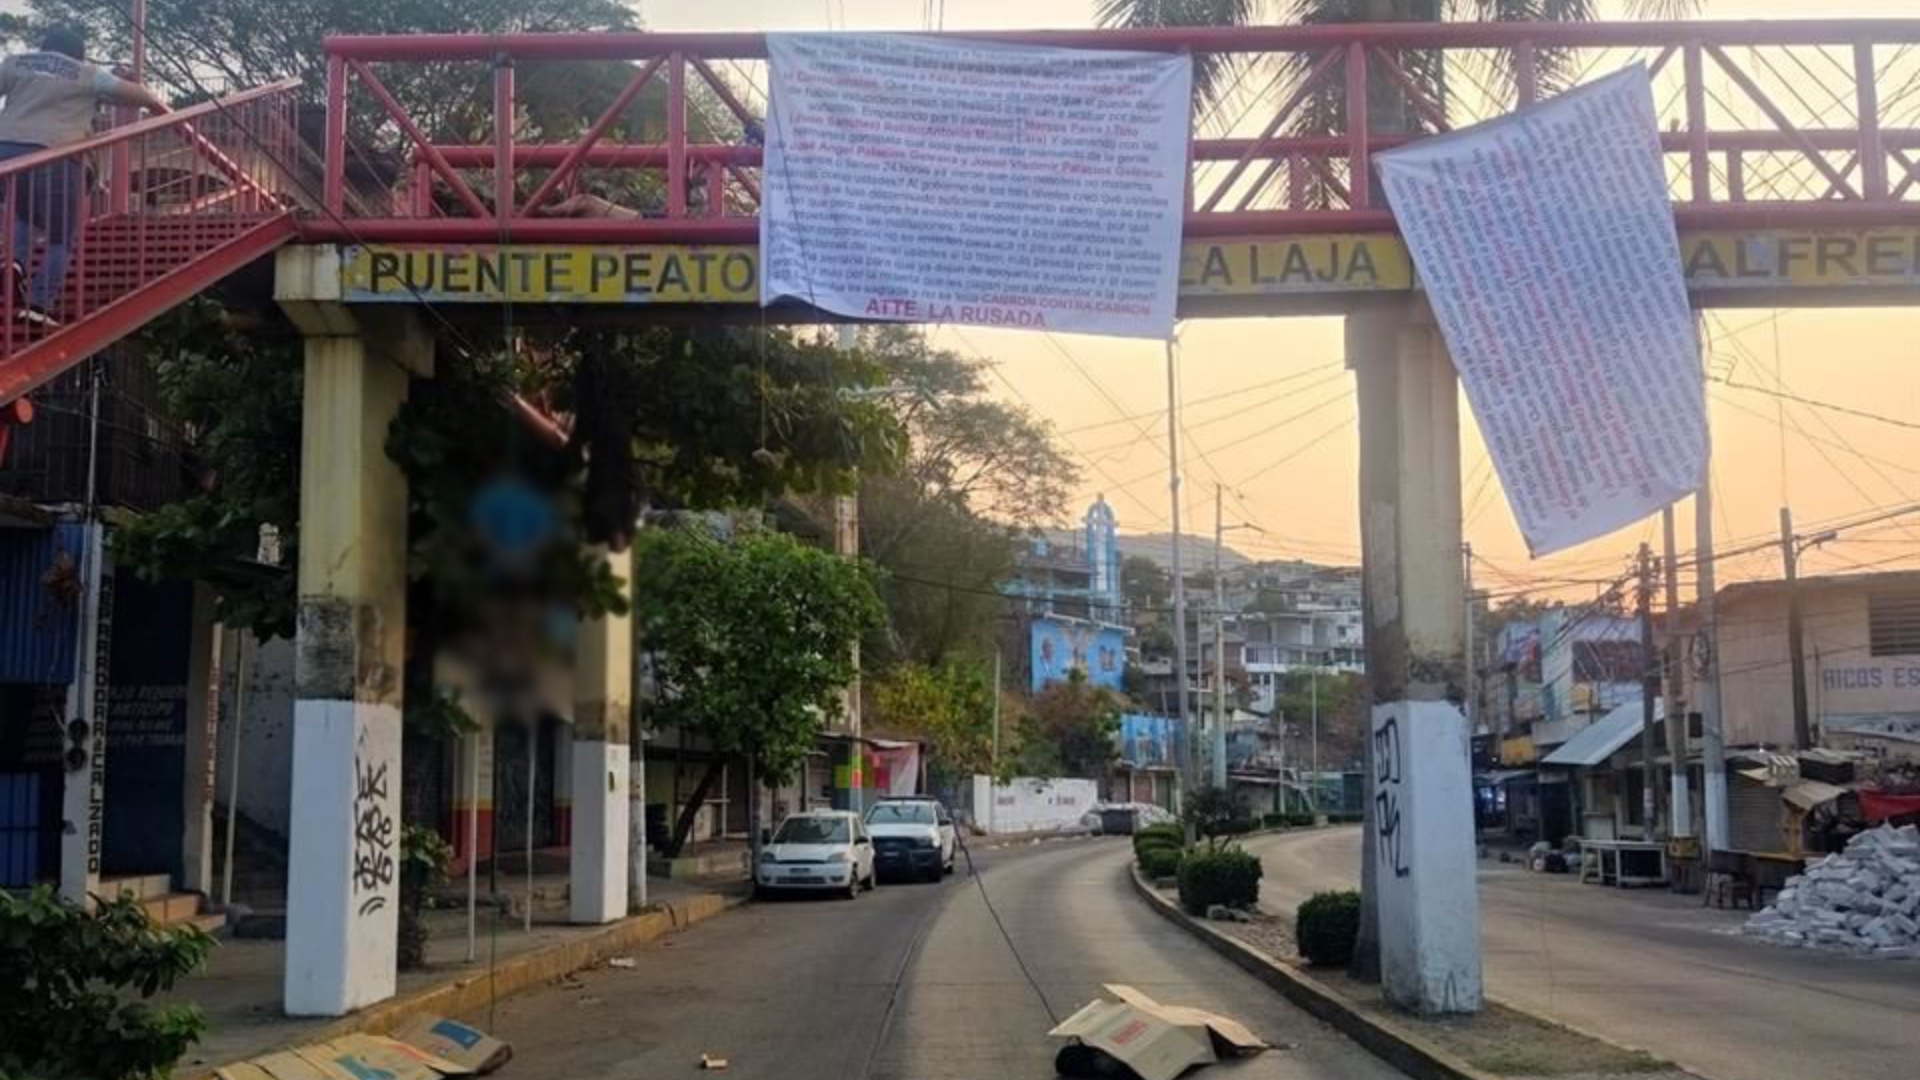 Los Rusos del “Mayo” Zambada abandonaron cuatro cadáveres en un puente peatonal de Acapulco